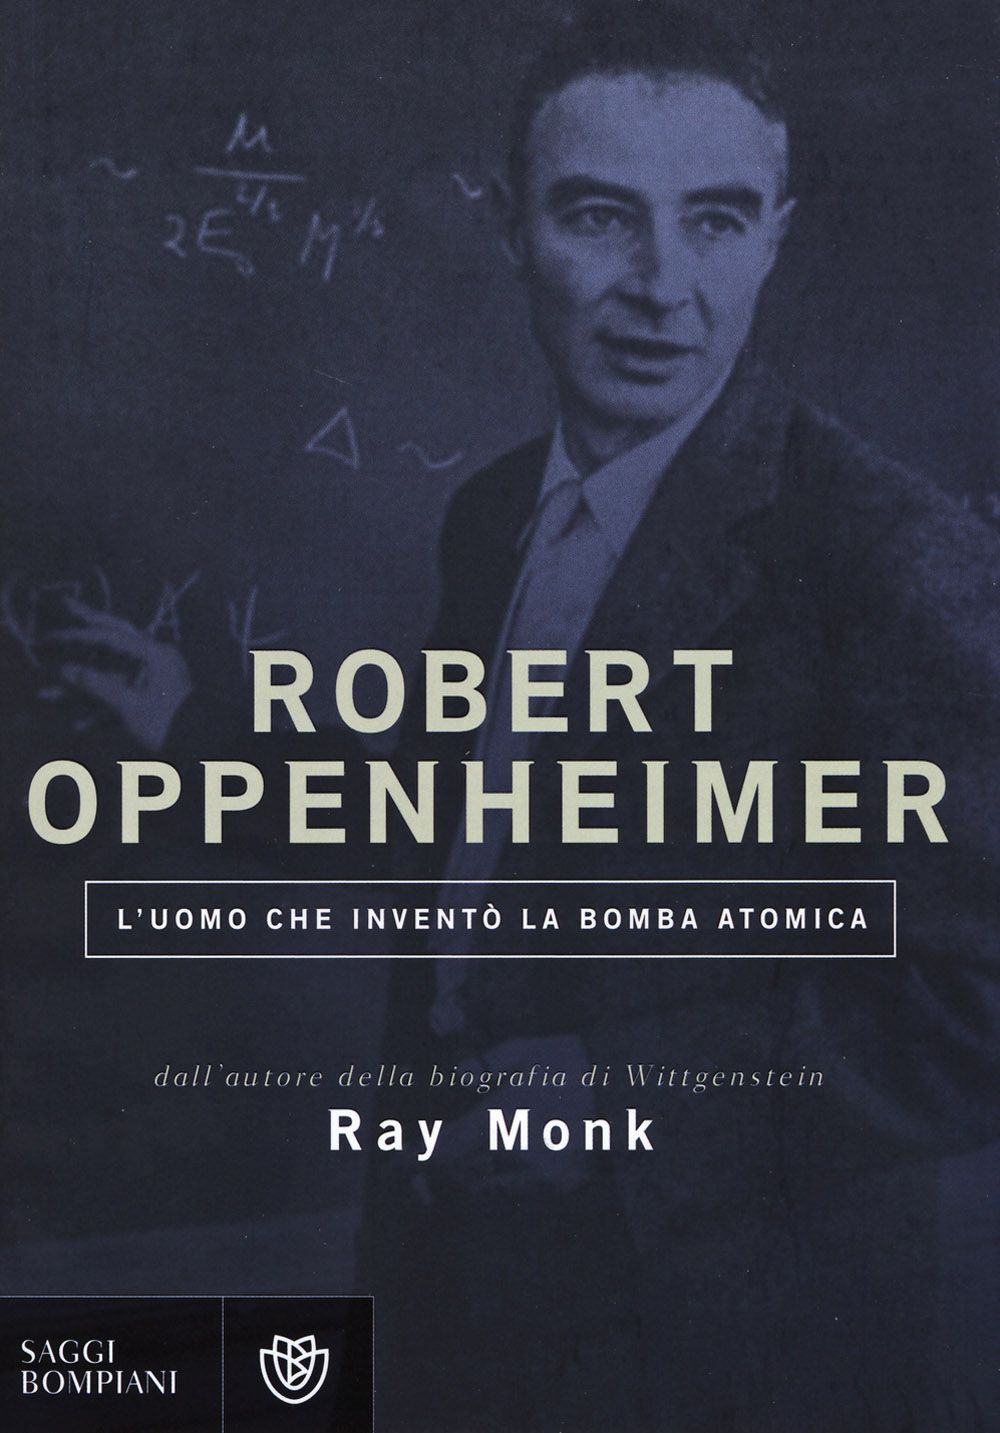 Robert Oppenheimer, tutti i libri sull&#8217;inventore della bomba atomica- immagine 6